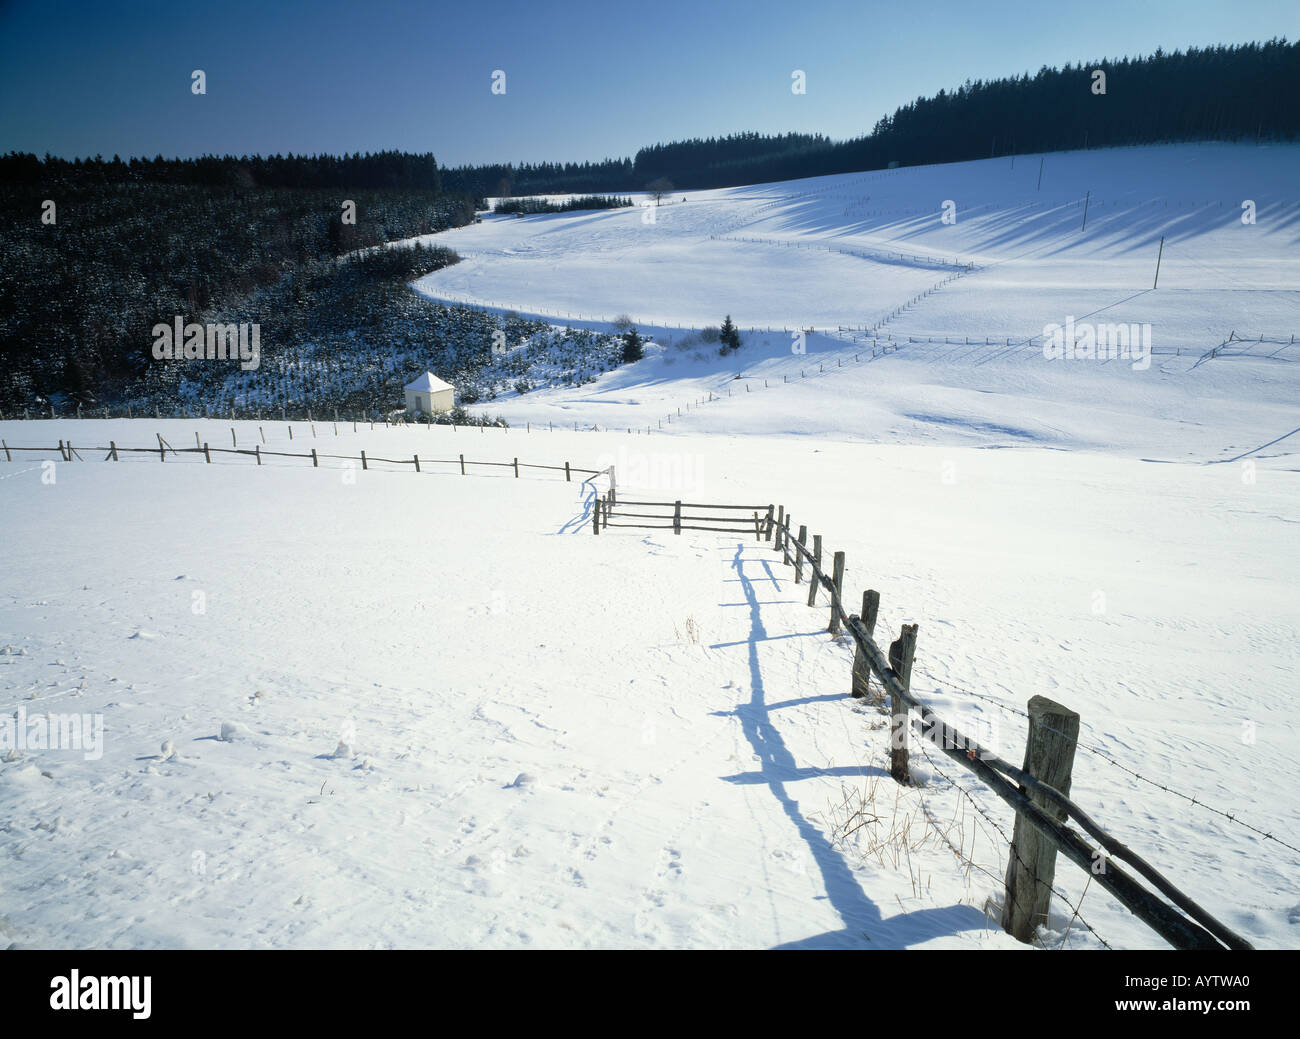 verschneite Winterlandschaft, huegelige Landschaft, Weidenzaun im Schnee, Bad Laasphe-Grossenbach, Wittgensteiner Land, Naturpark Rothaargebirge, Saue Stock Photo